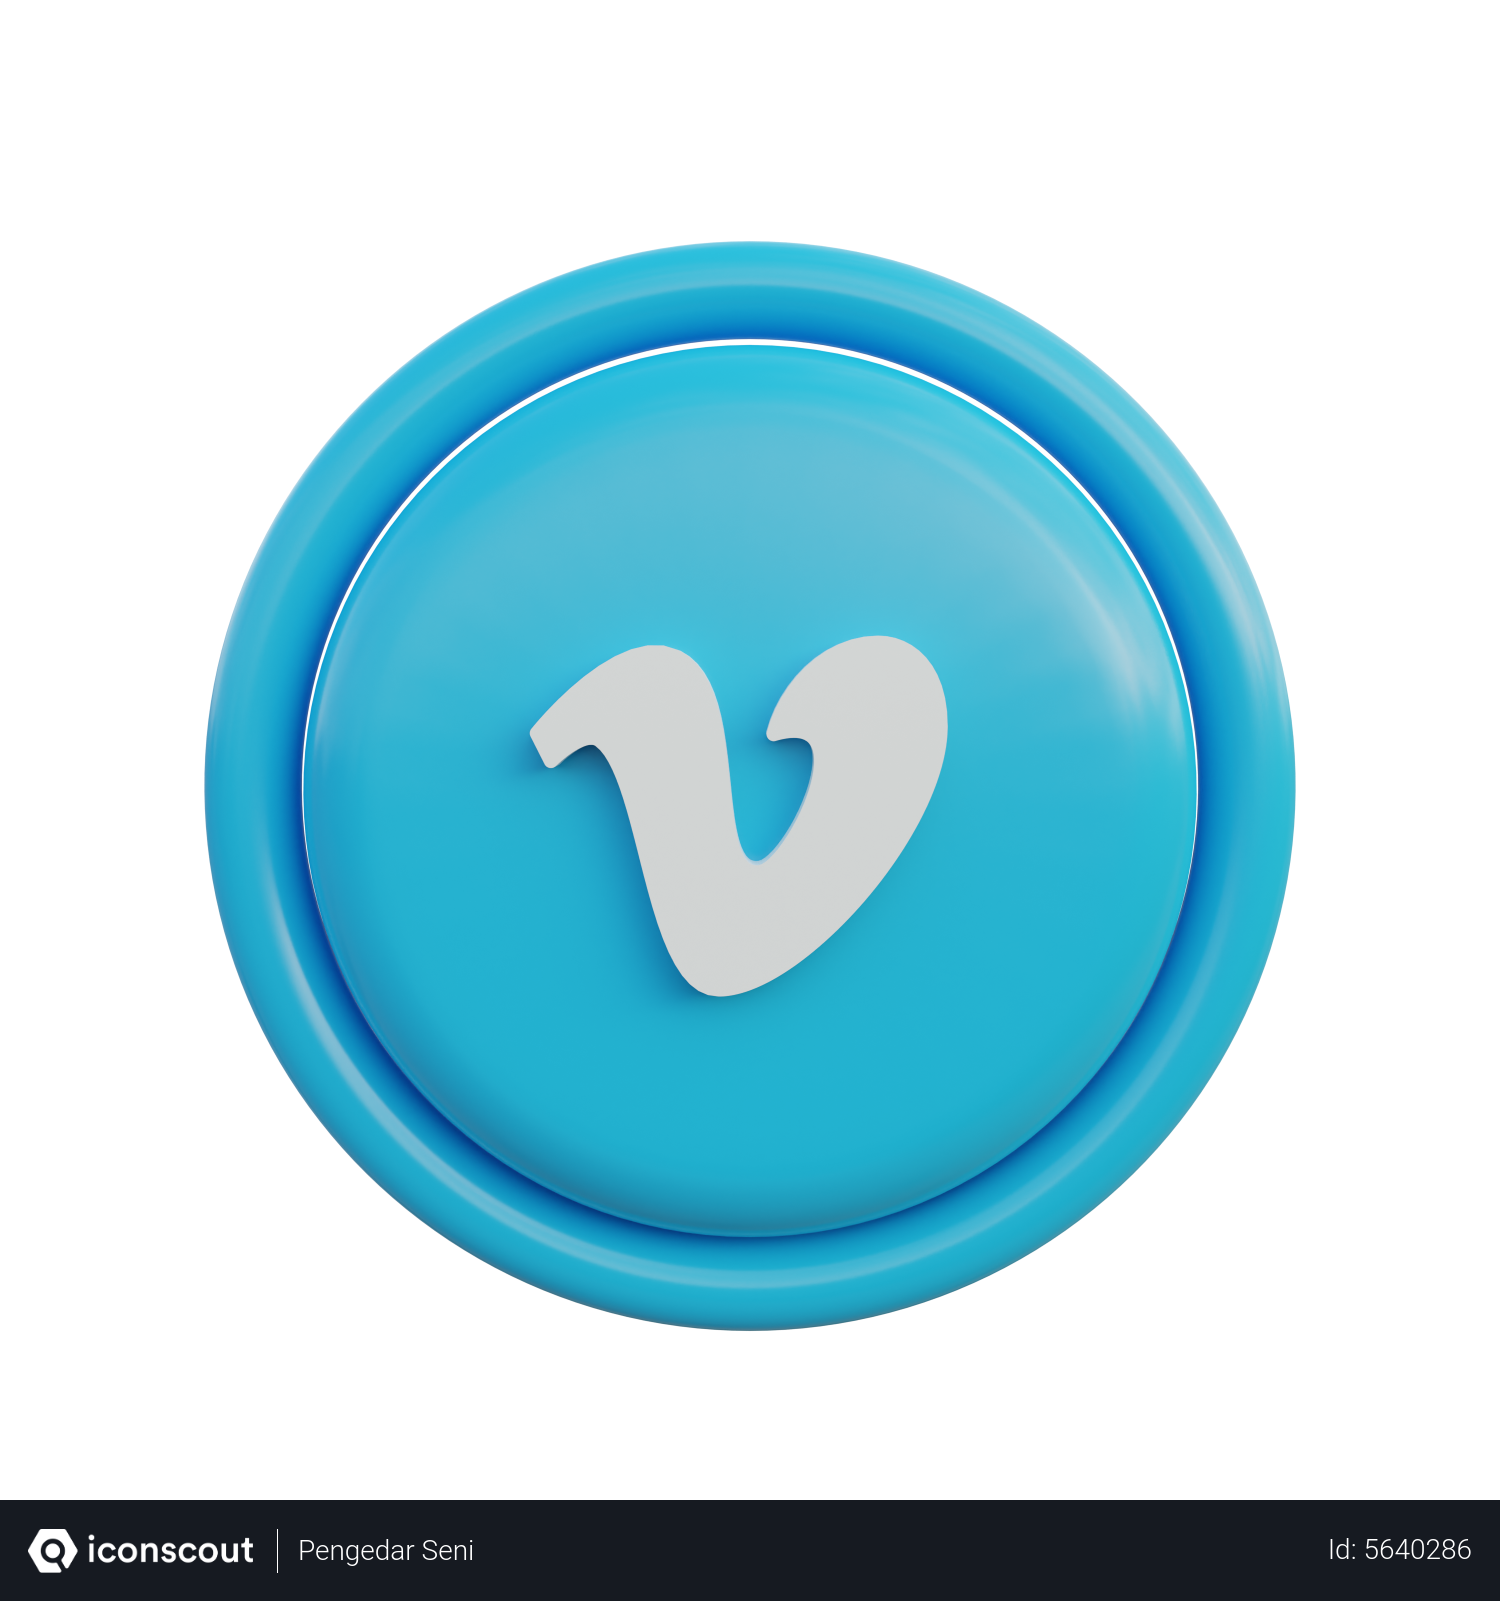 Vimeo Logo png images | Klipartz